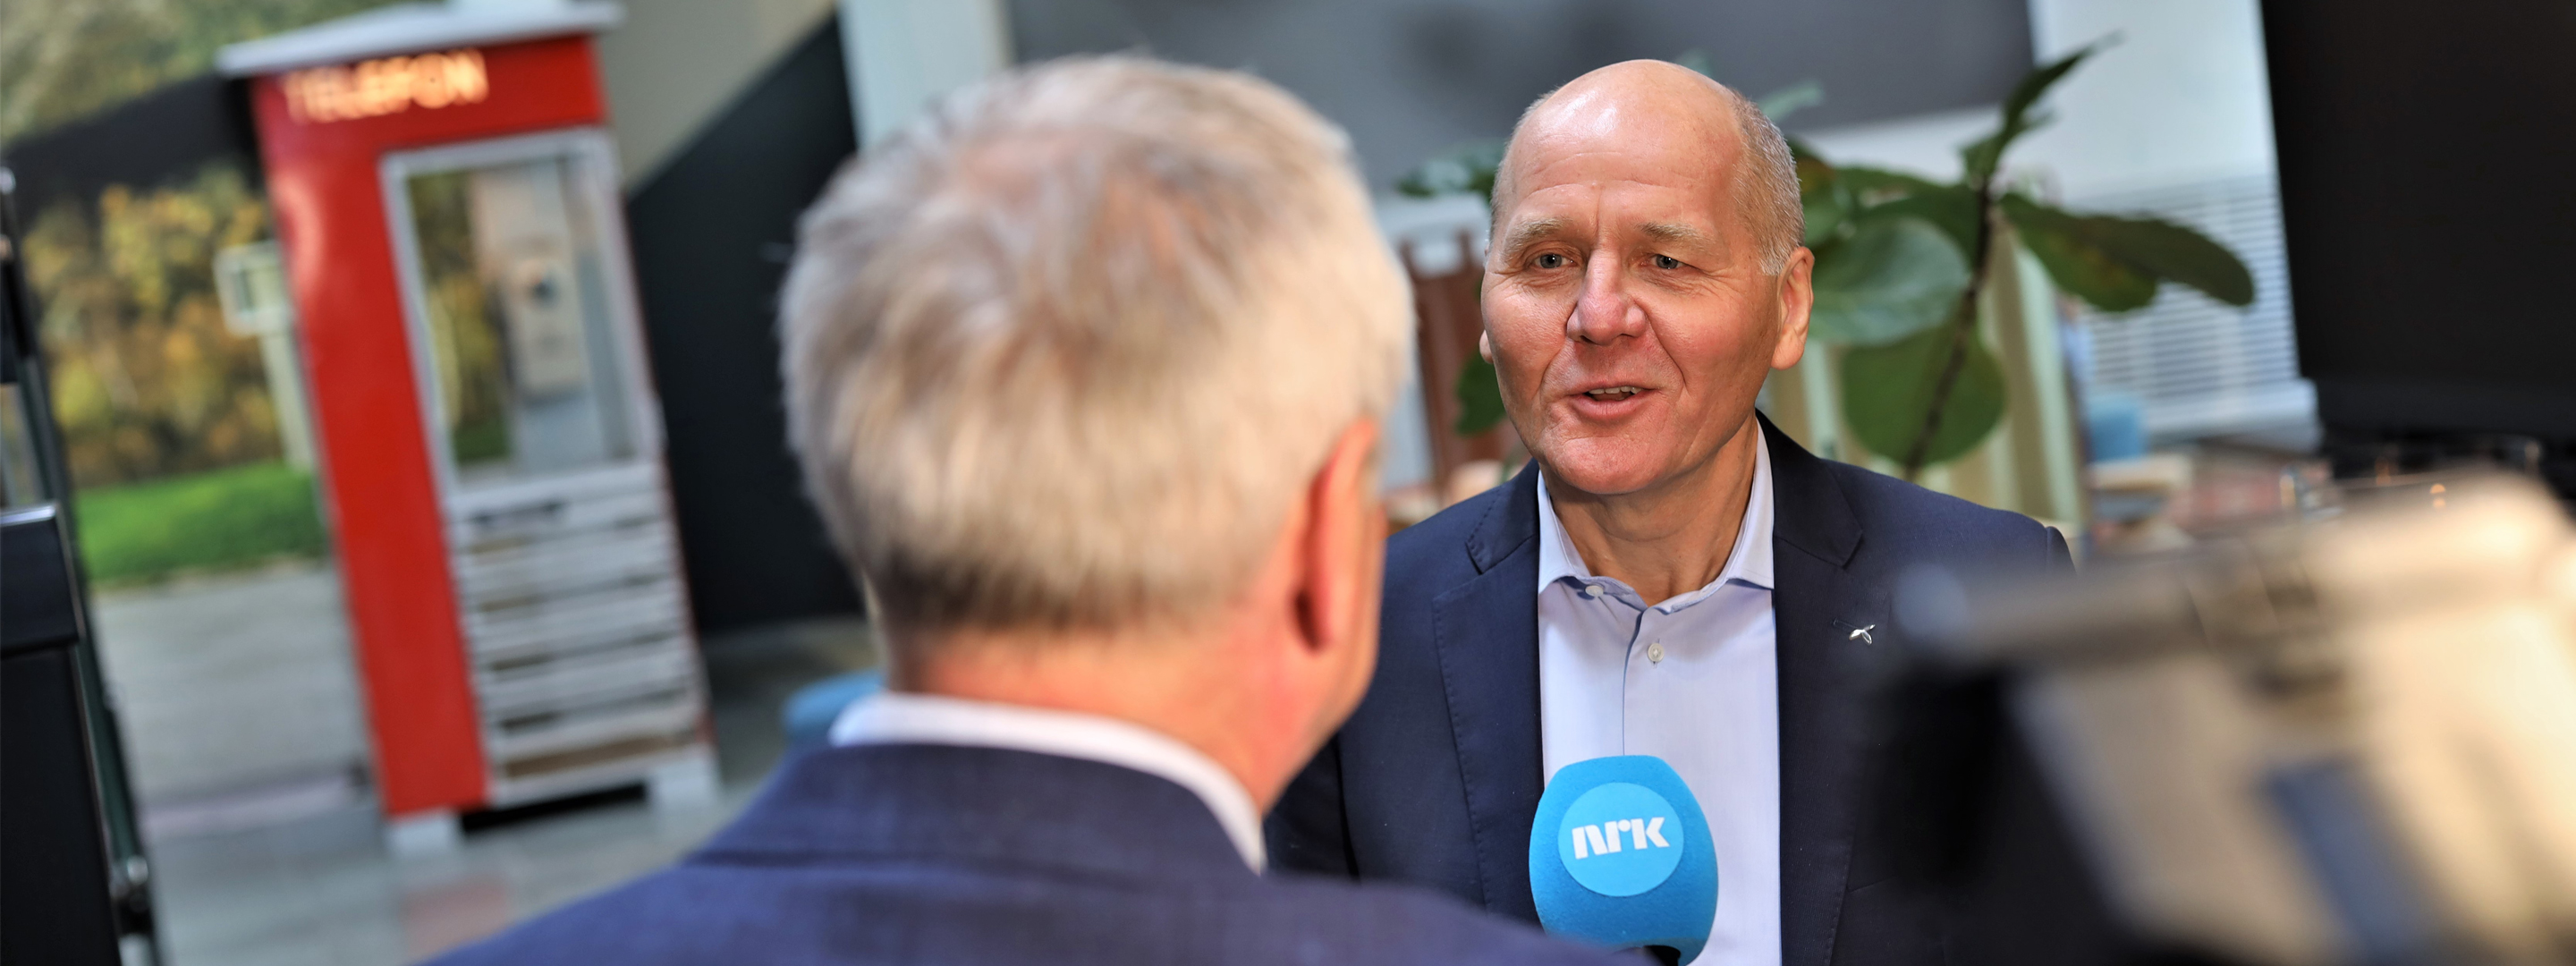 Sigve Brekke interviewed by NRK